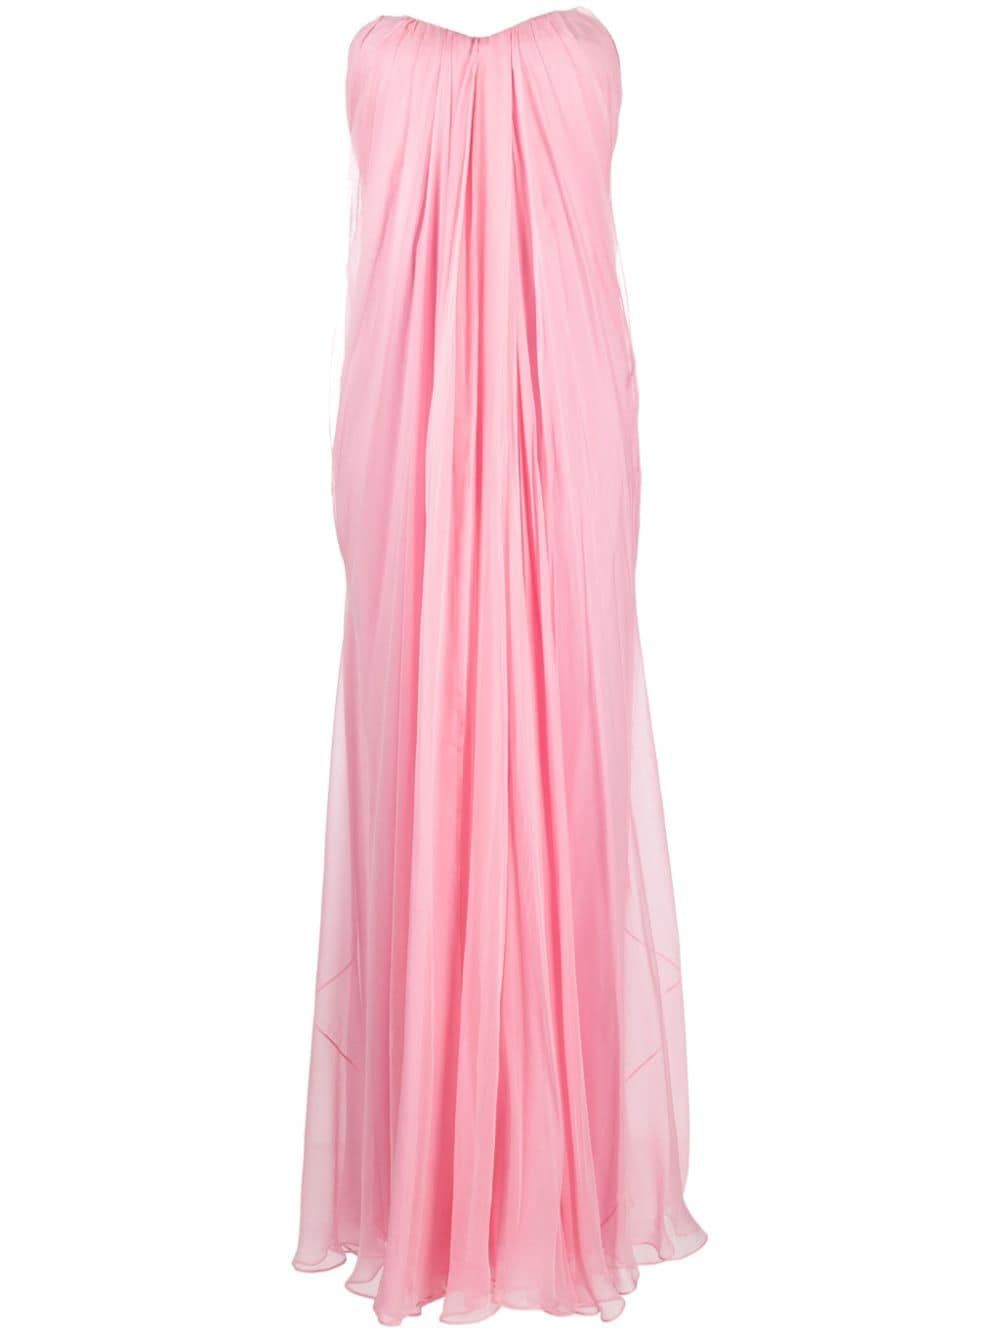 Đầm strapless Silk Bustier màu hồng và tím cho phụ nữ